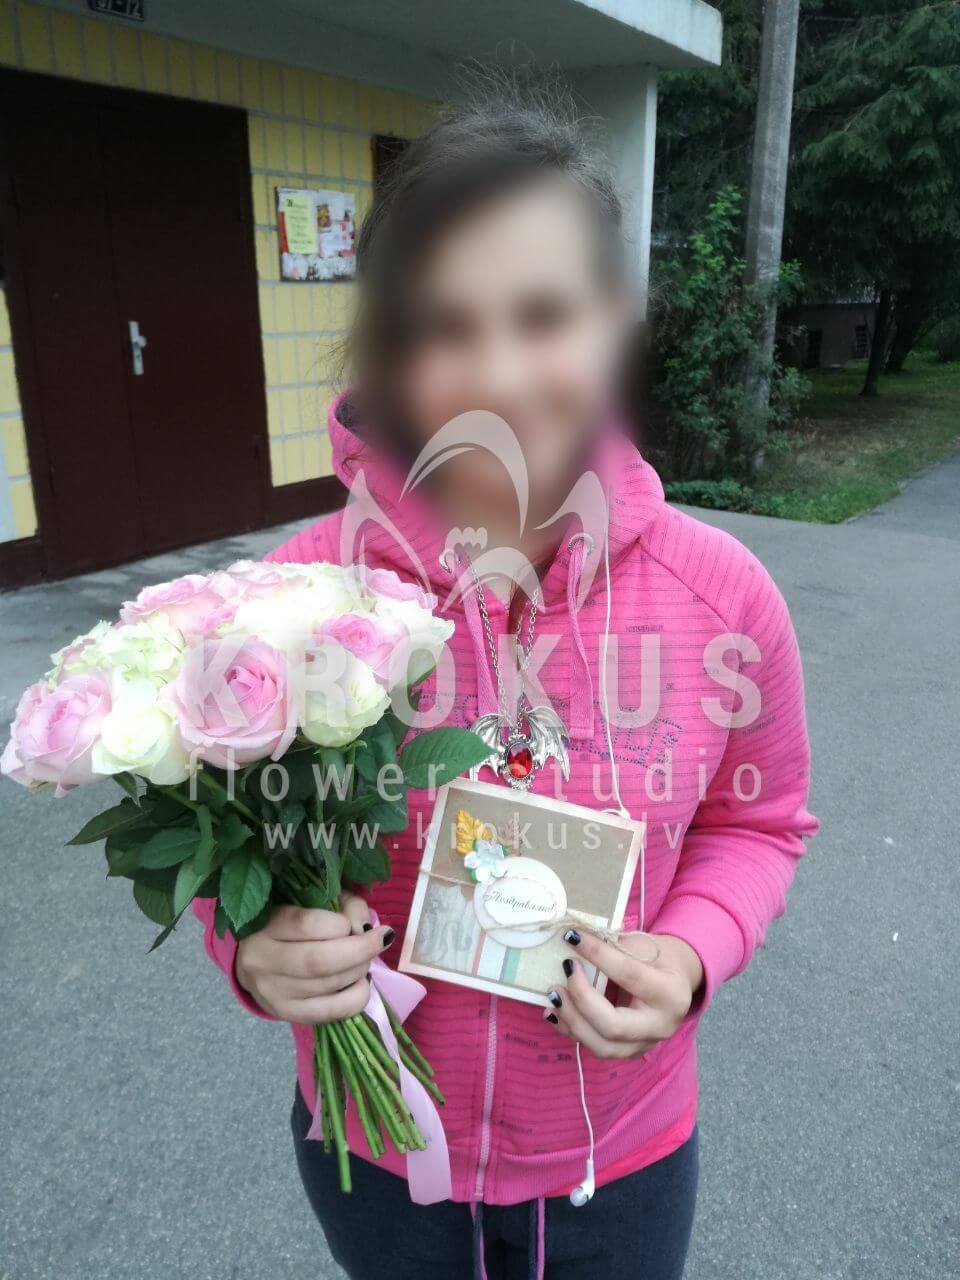 Доставка цветов в город Рига (розовые розыбелые розы)